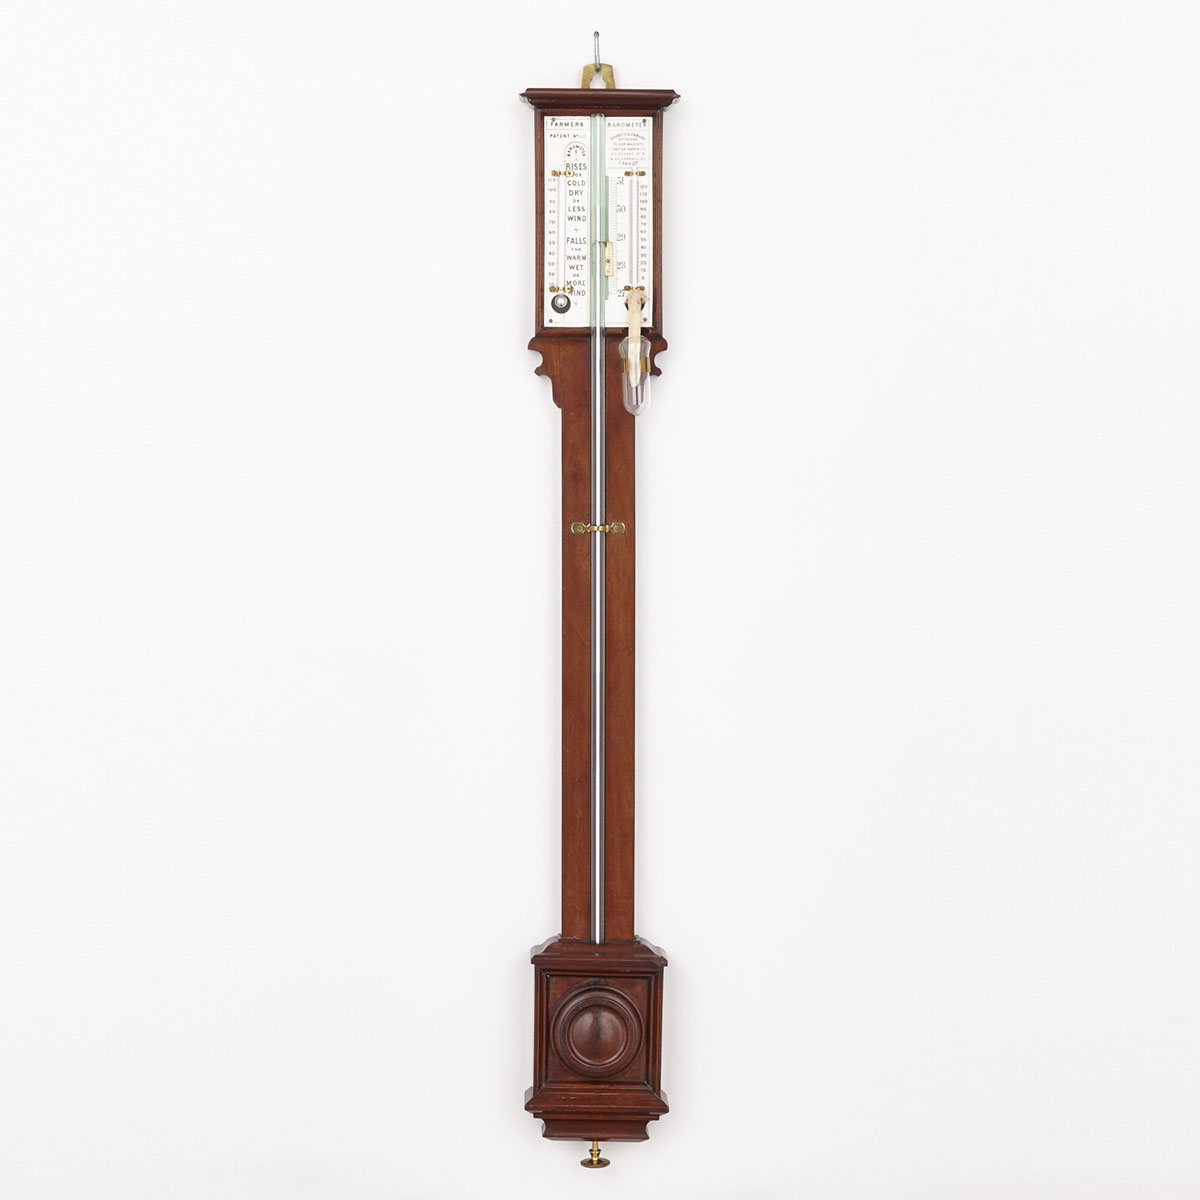 Victorian Negretti & Zambra Patent no. 612 “Farmer’s Barometer’, 19th century